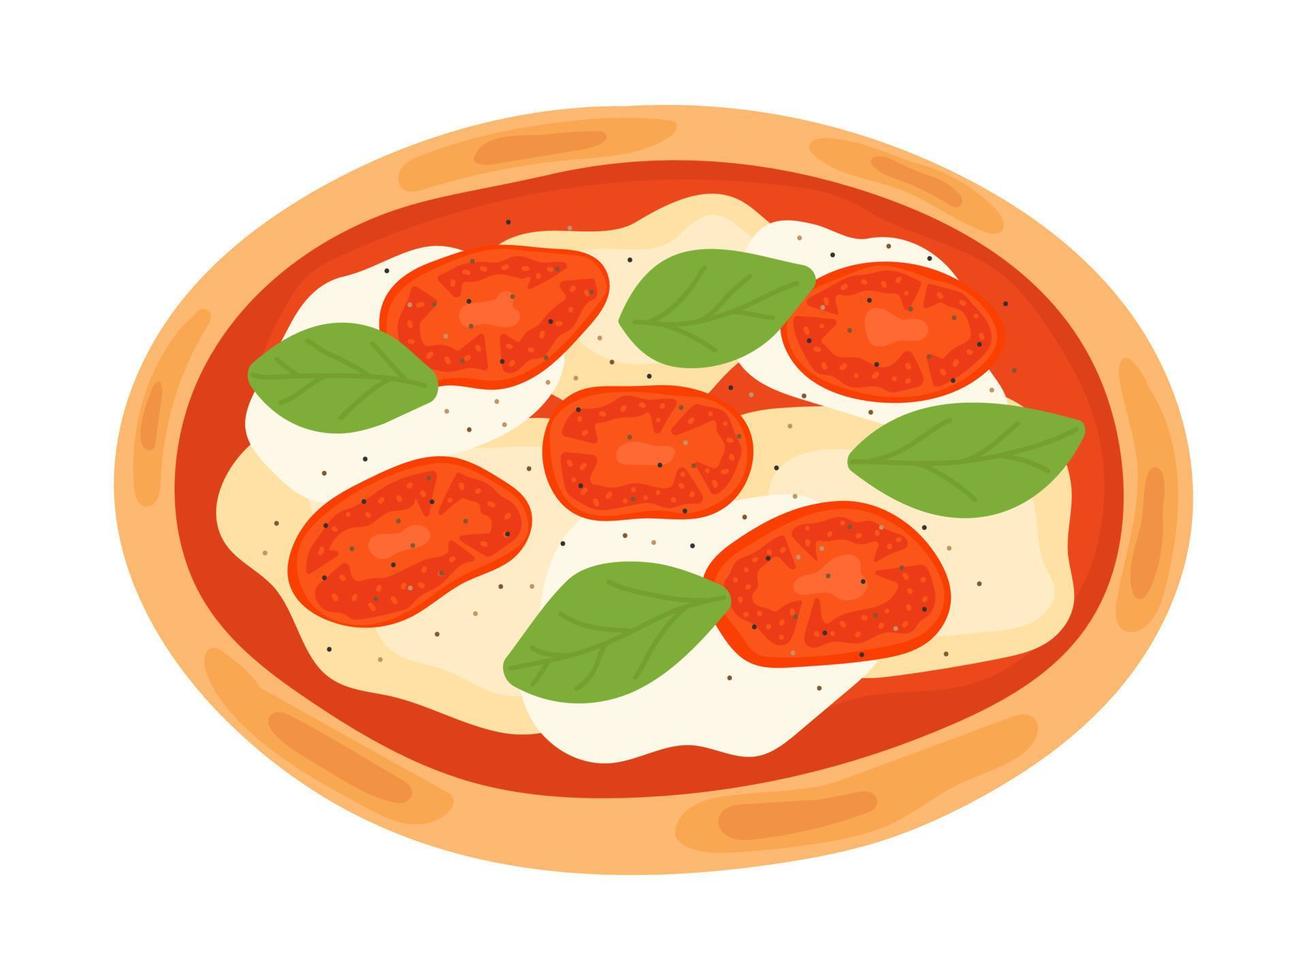 pizza tradizionale italiana con mozzarella, pomodori, basilico. illustrazione vettoriale di cibo.